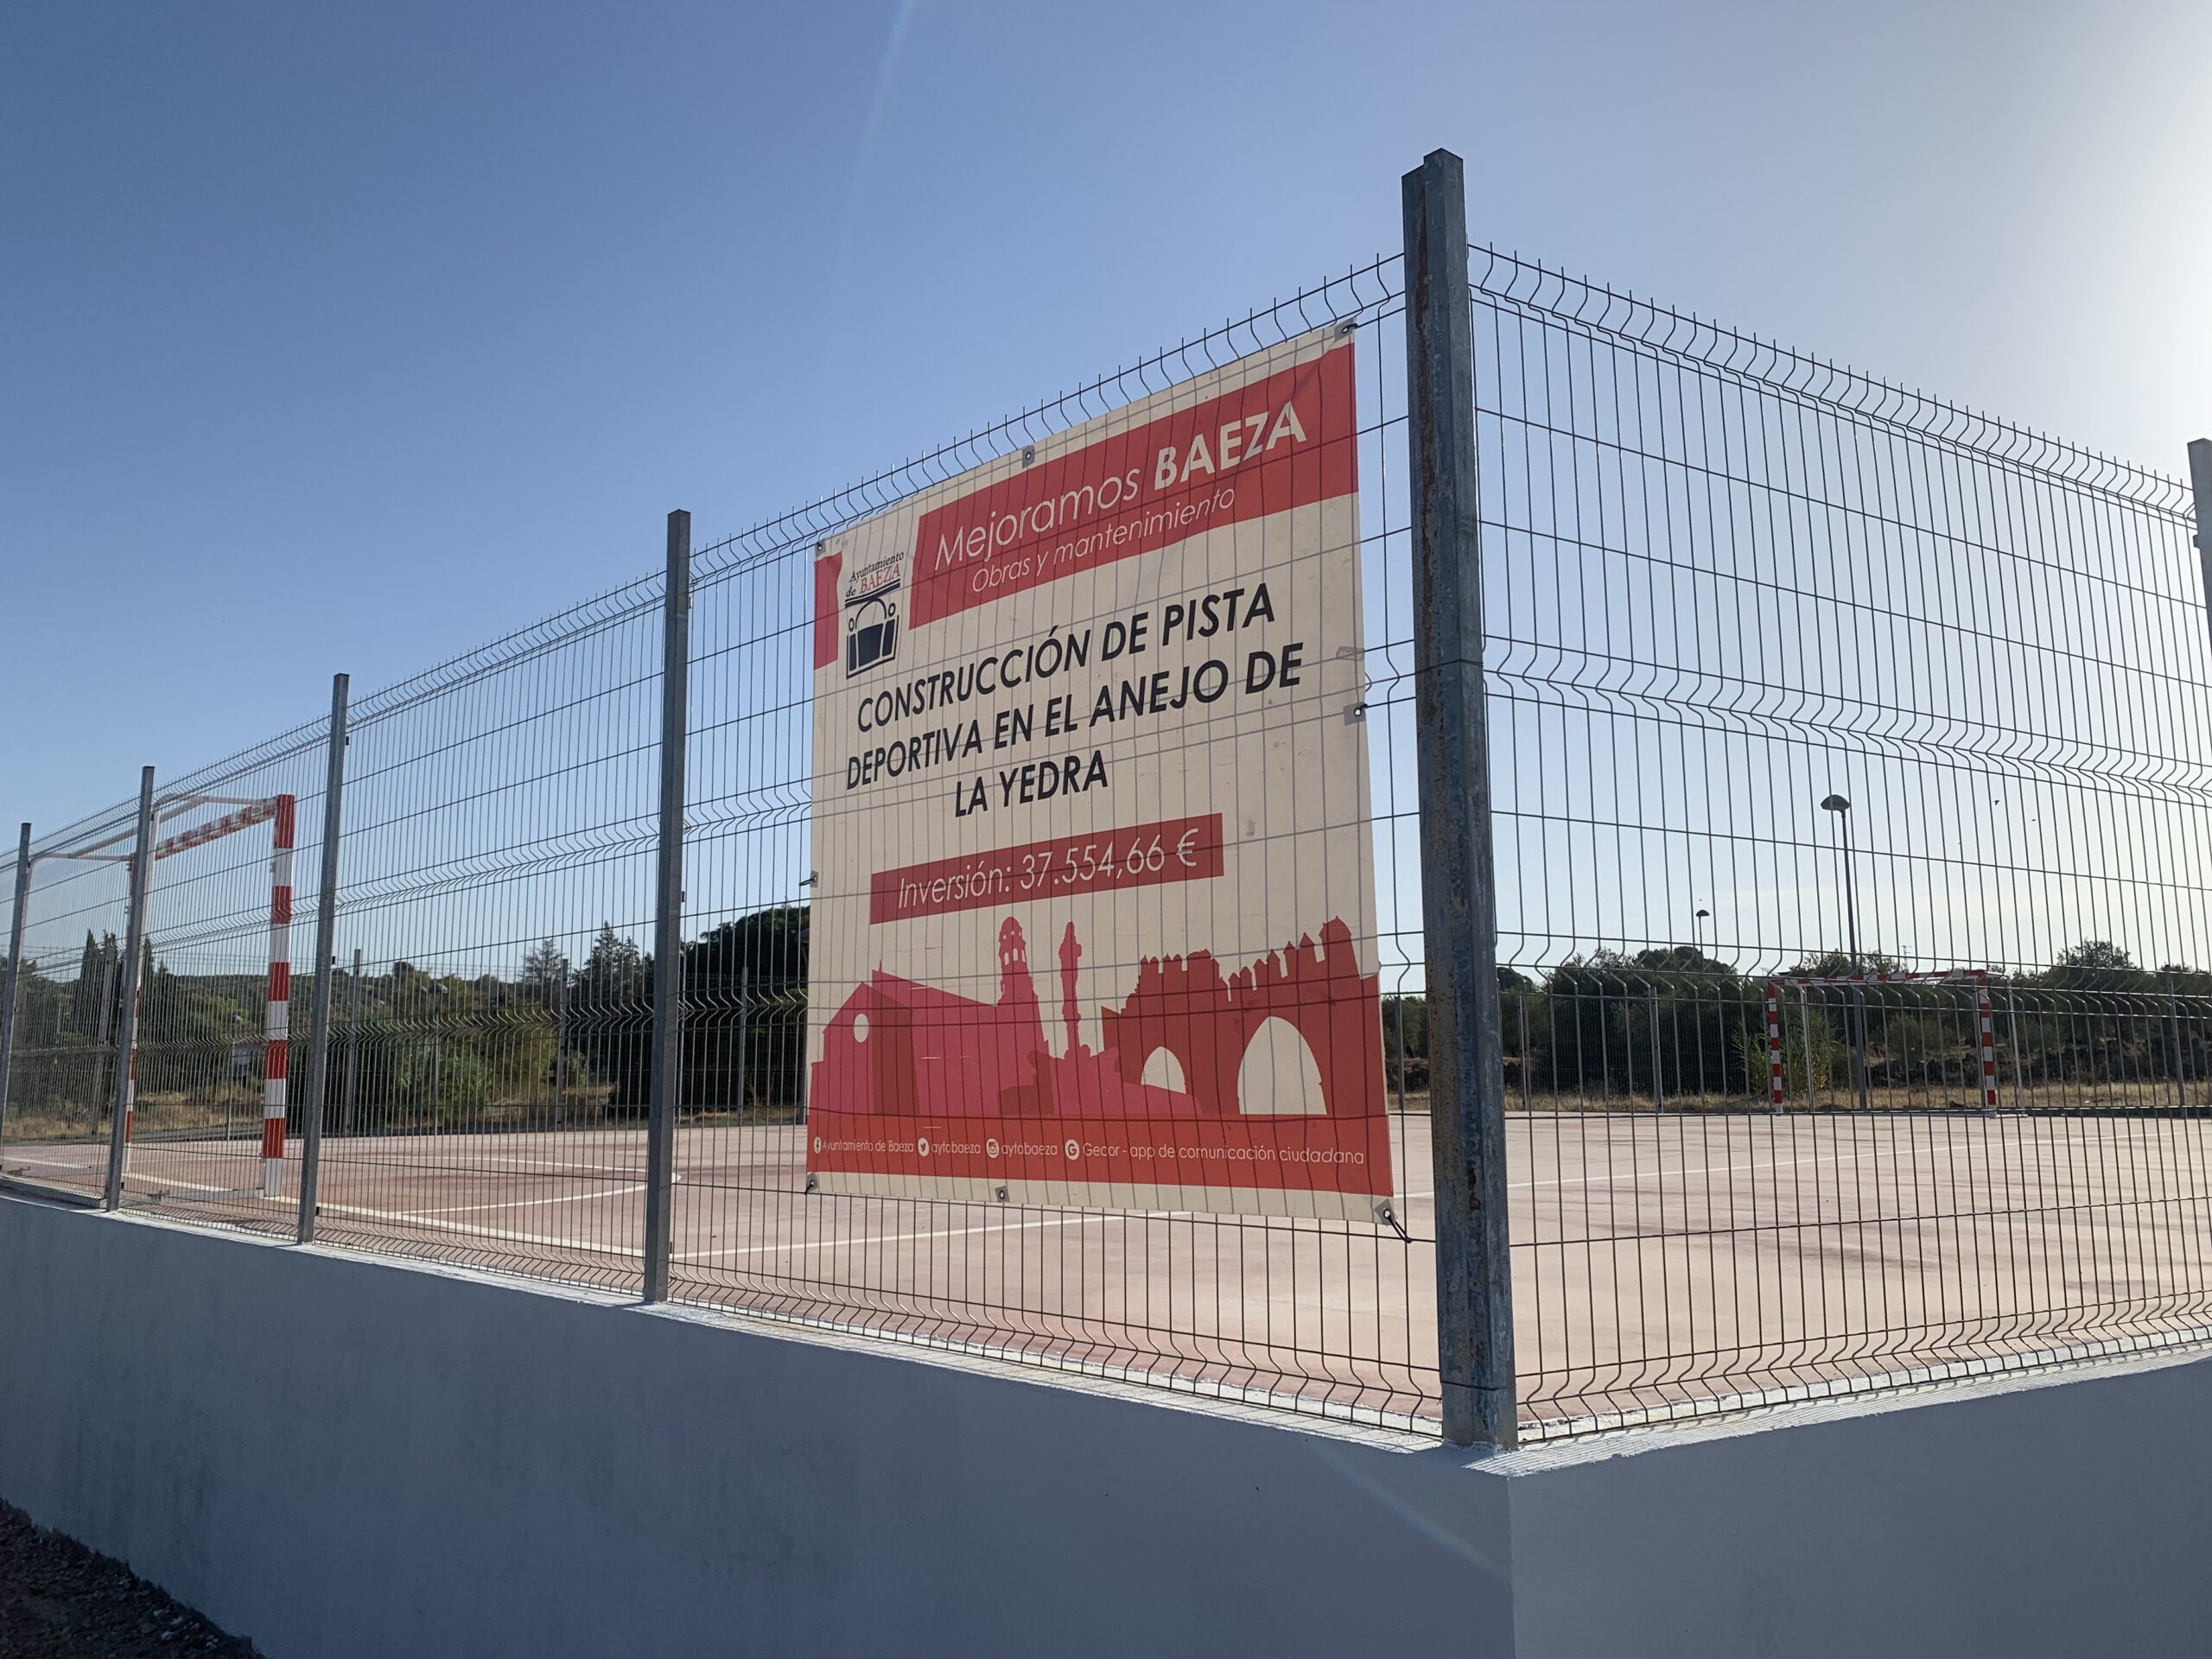 Finalizada la nueva pista deportiva en La Yedra (Baeza)